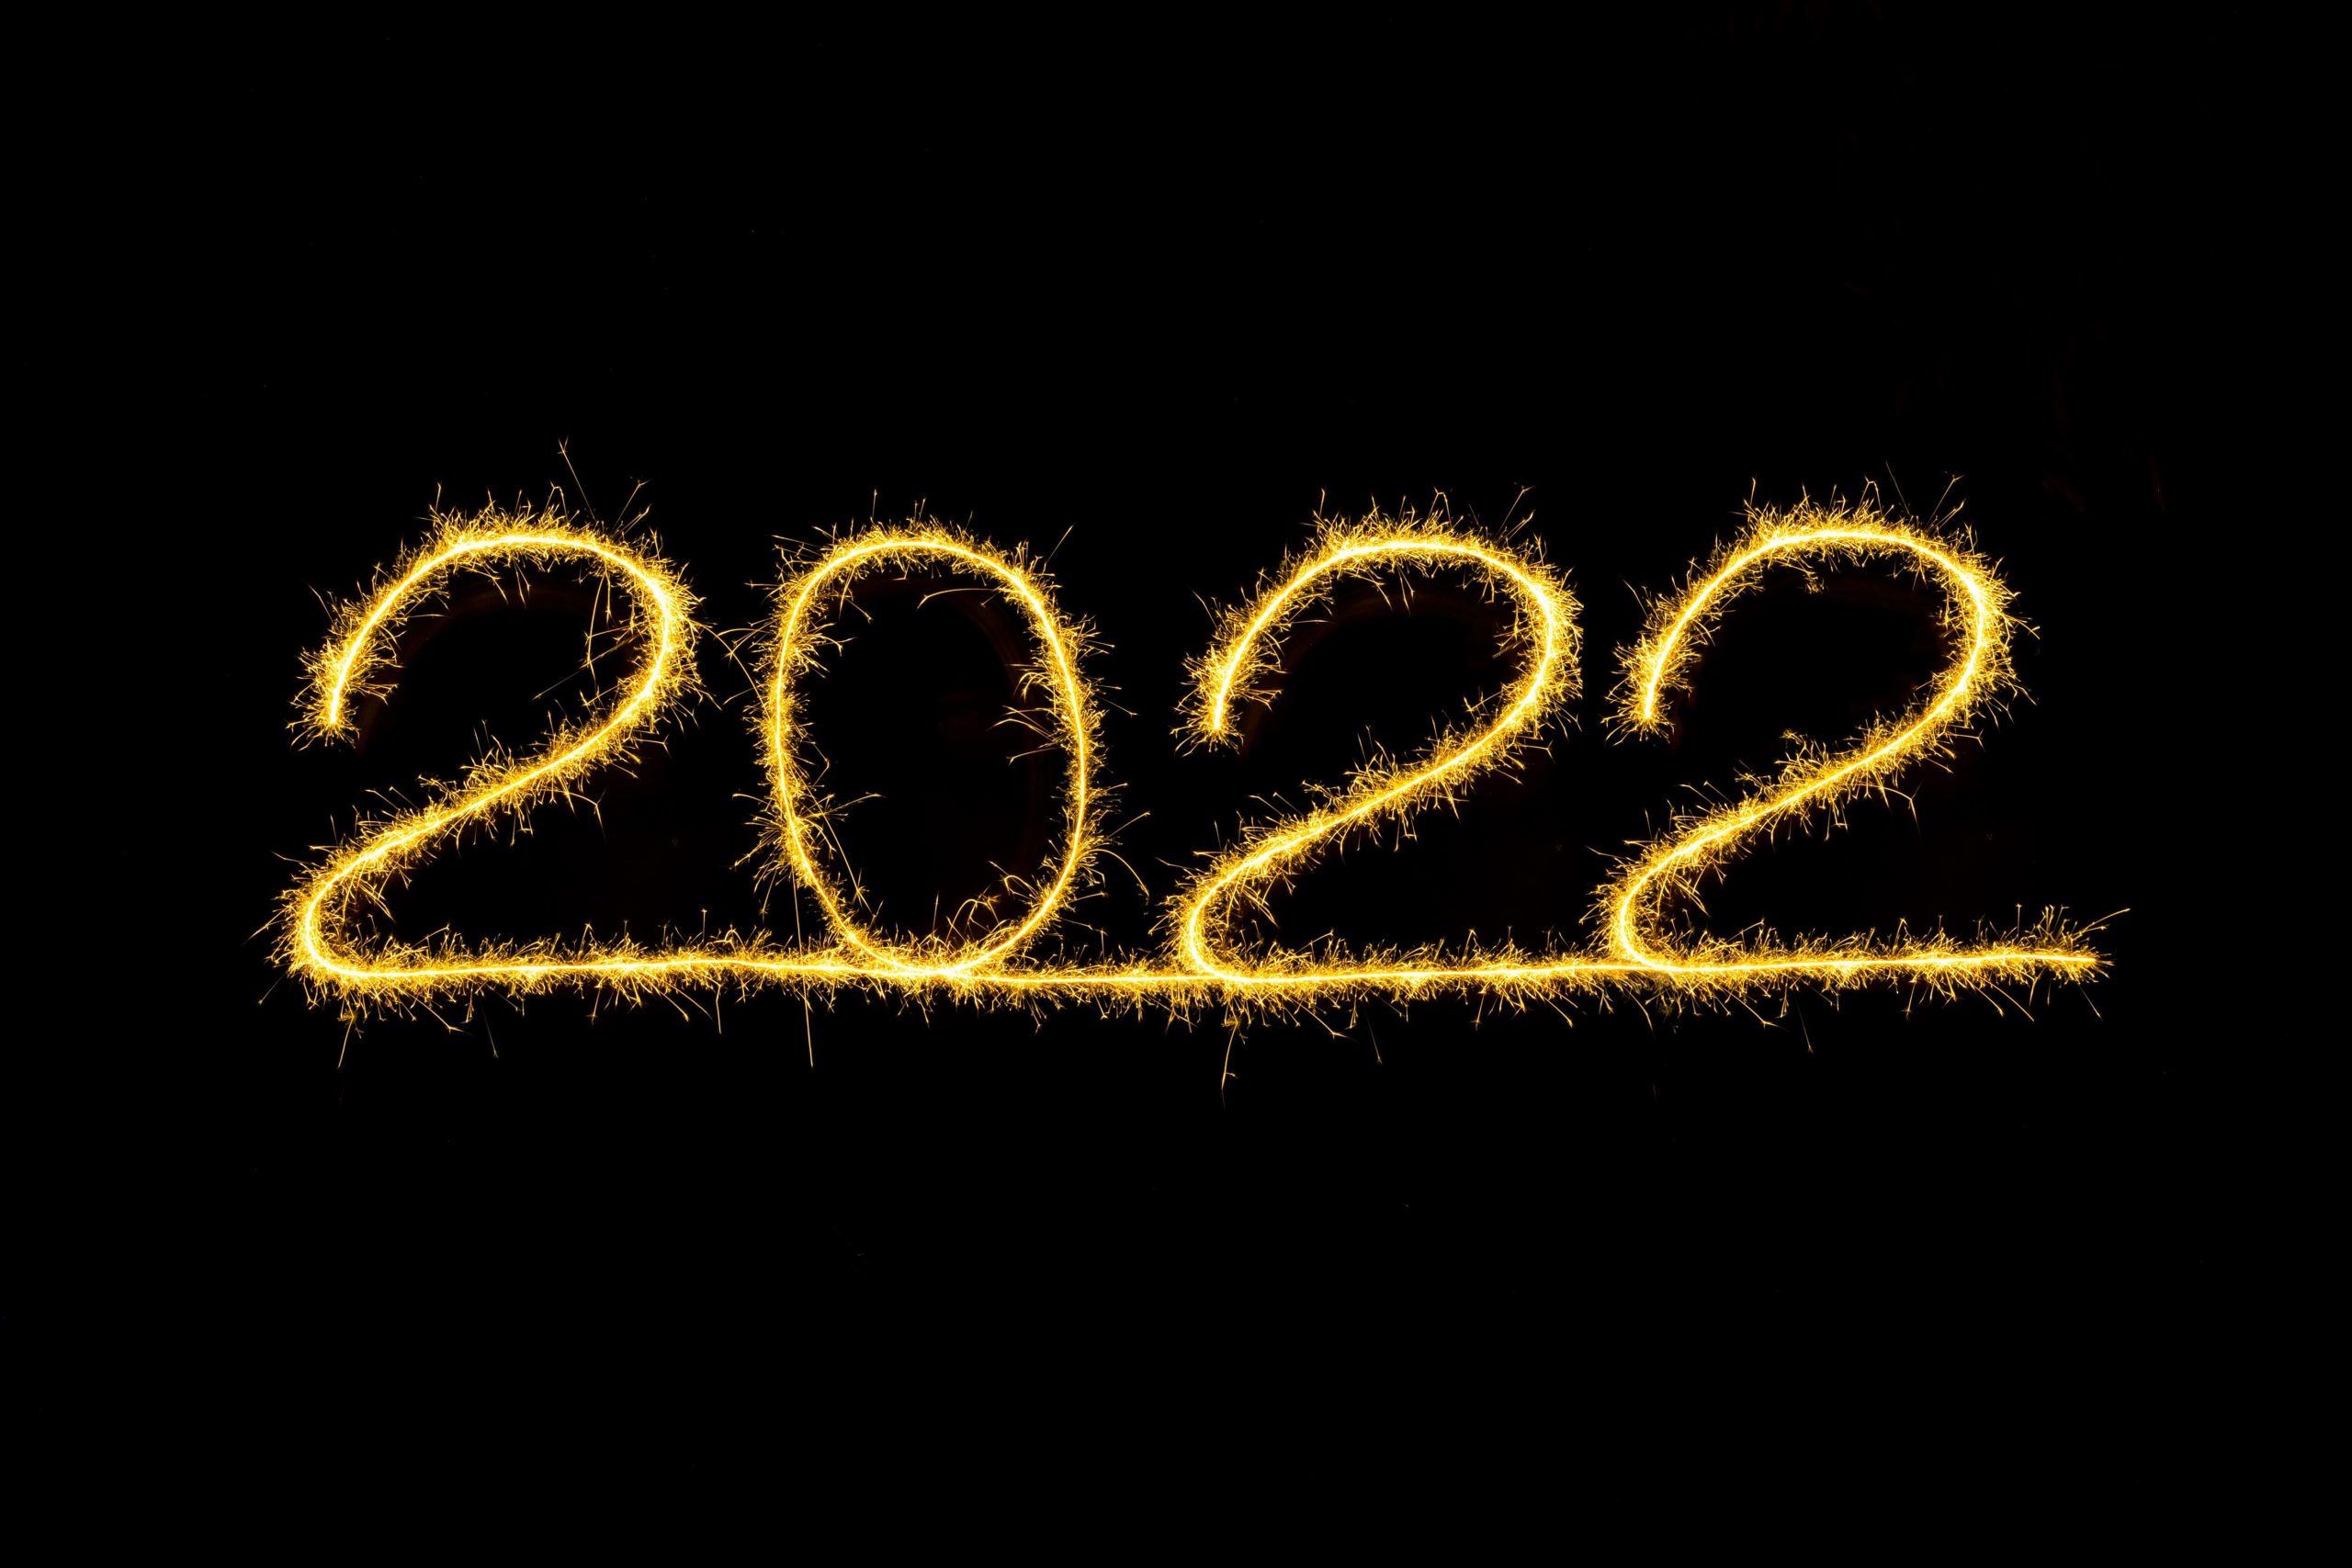 صورة عبارات تهنئة بسنة 2022 كلمات راقية عن راس السنة الجديدة 2022